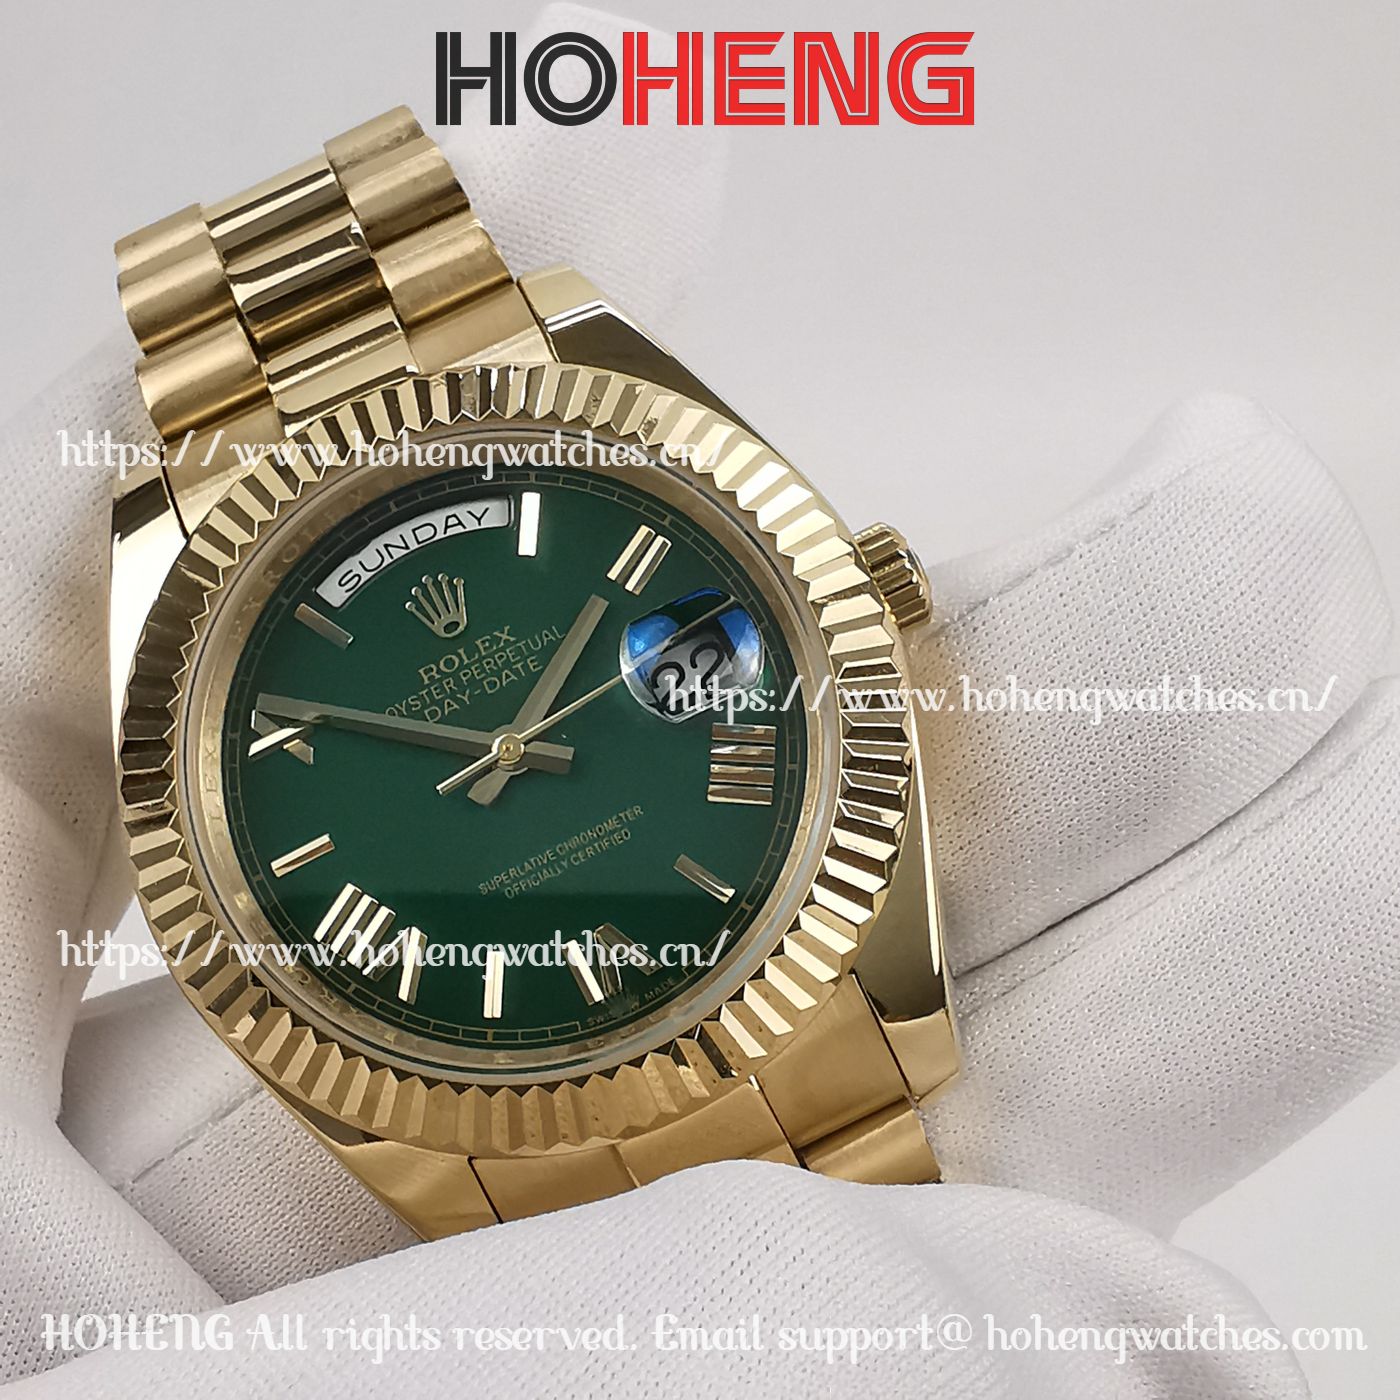 Rolex Day-Date 228238 Fluted Bezel Green Dial